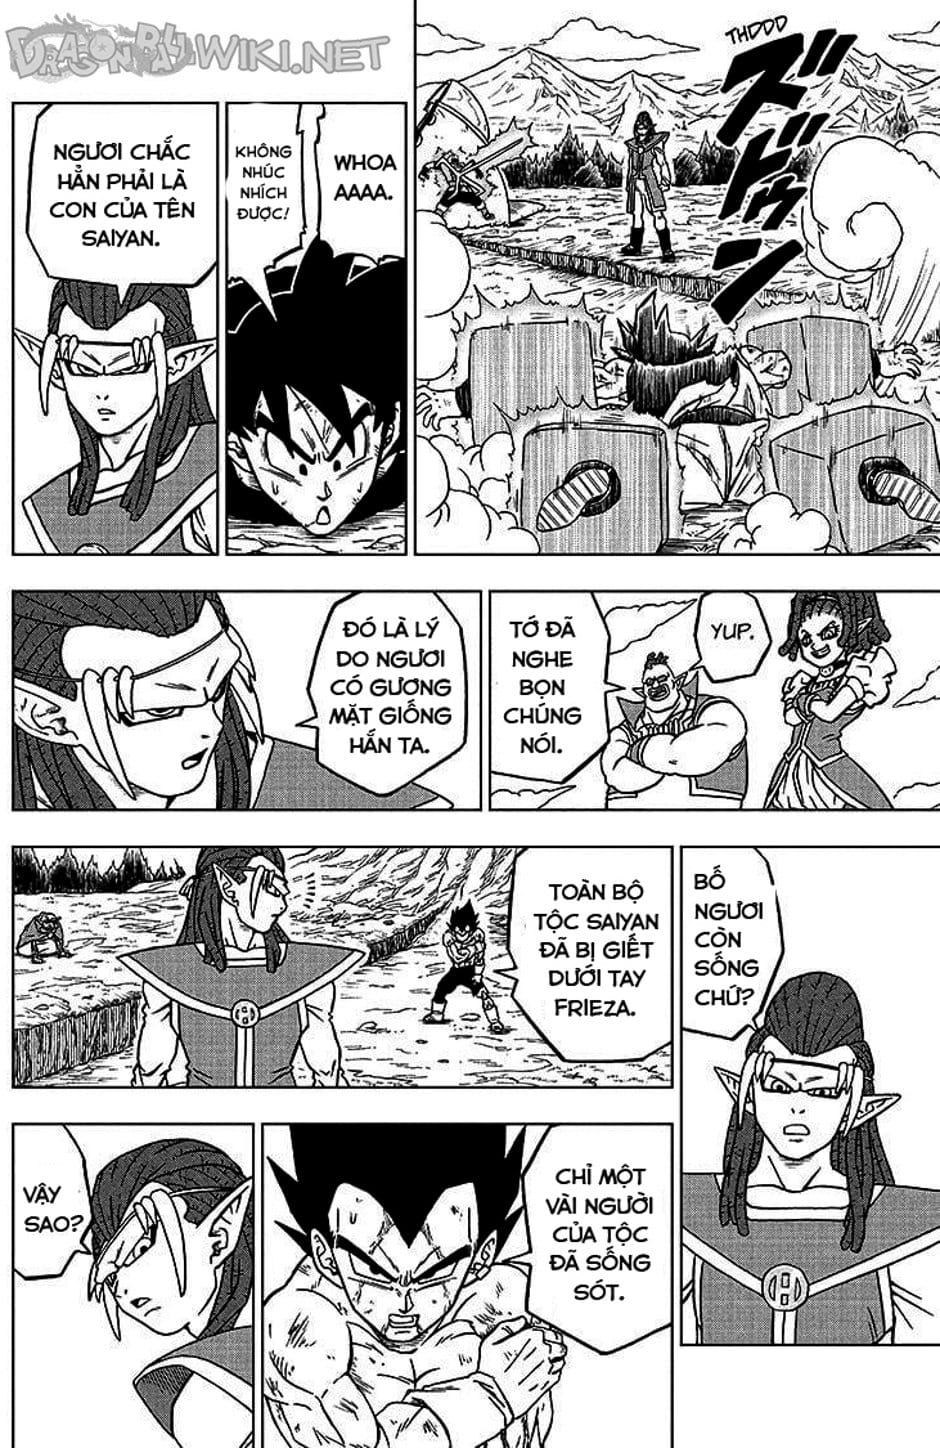 Truyện Tranh Truy Tìm Ngọc Rồng Siêu Cấp - Dragon Ball Super trang 3130